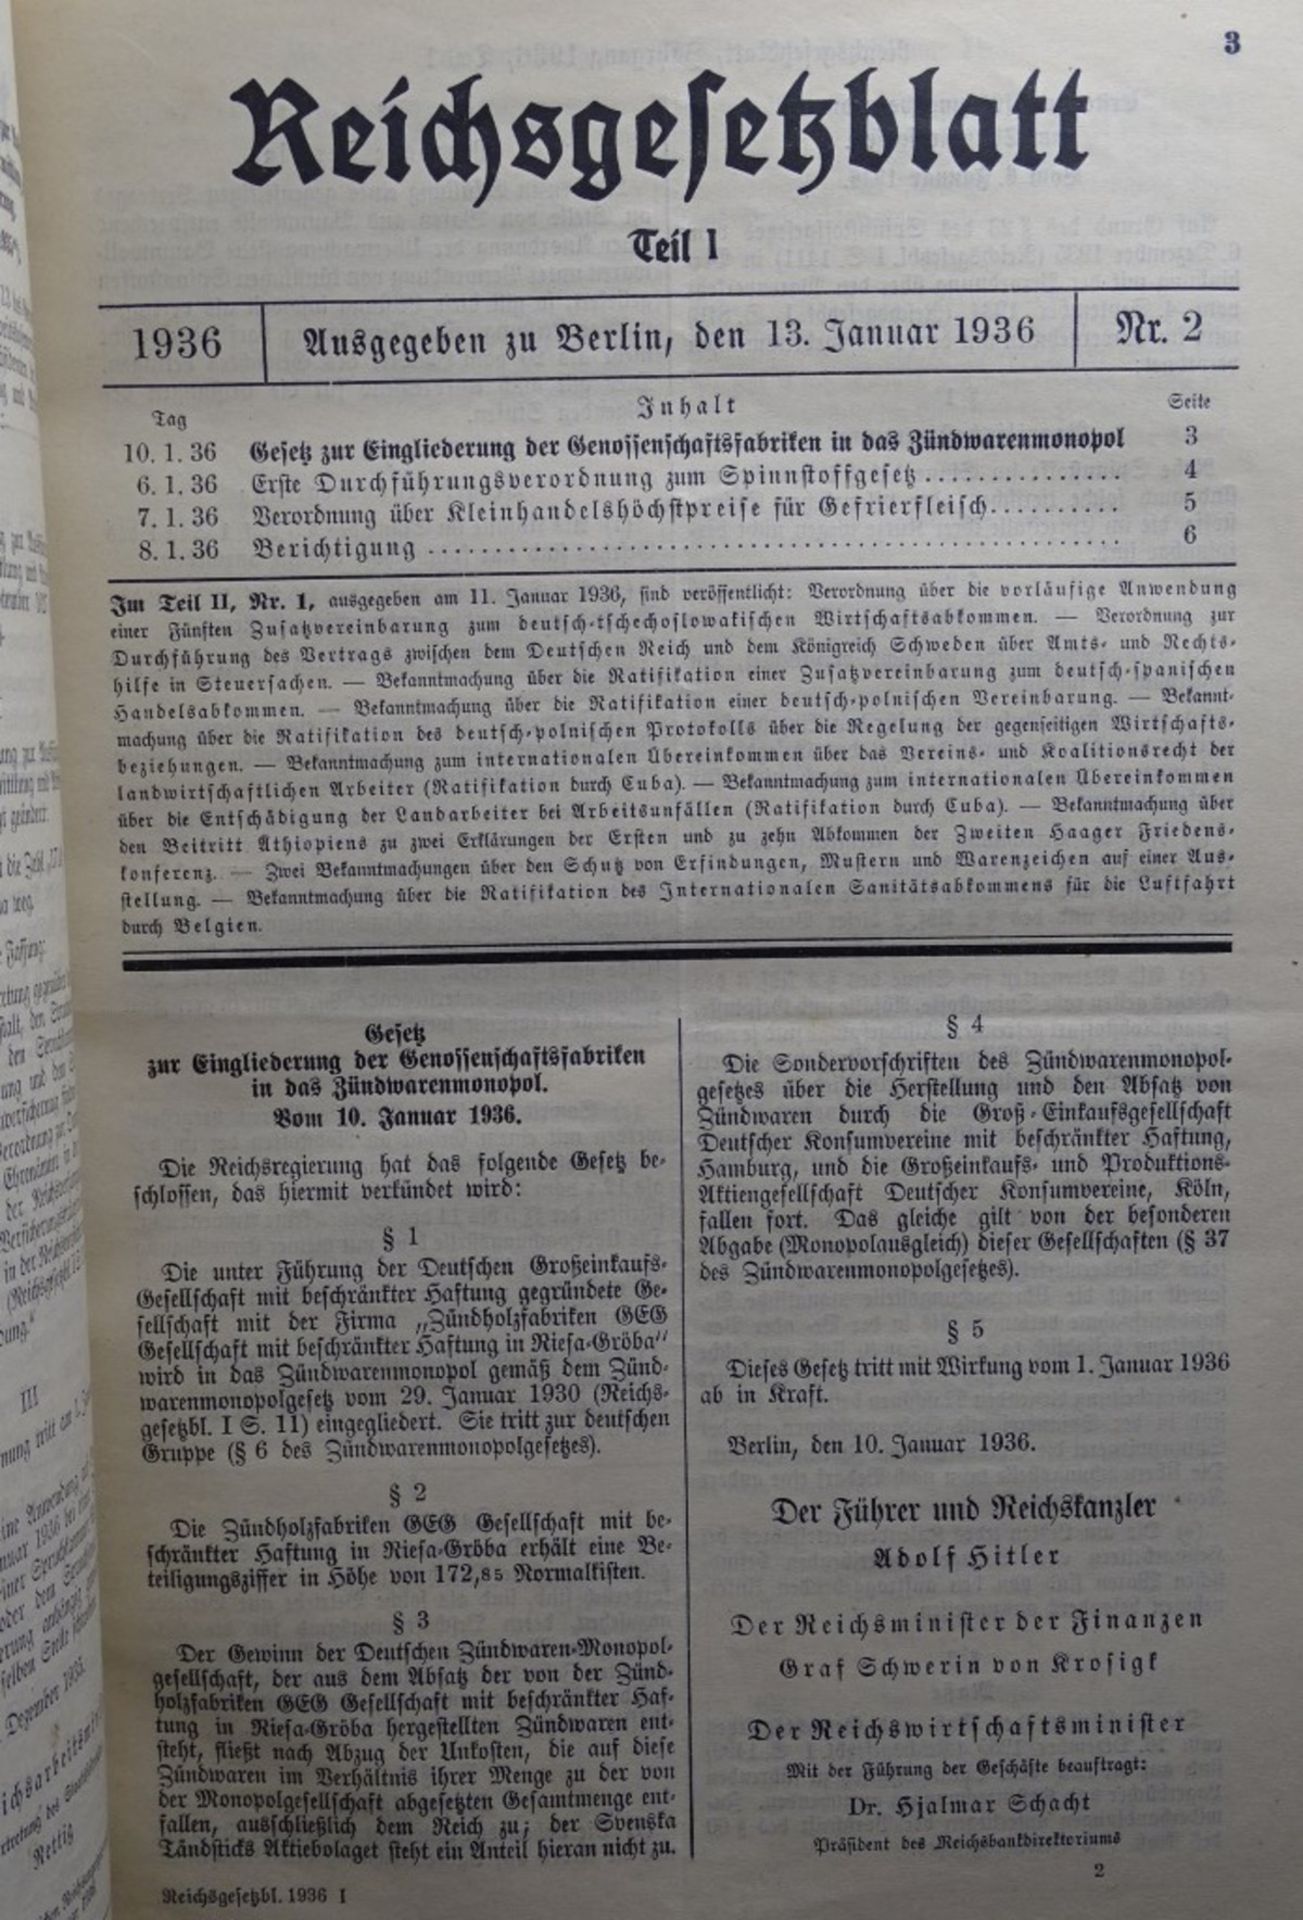 Reichsgesetzblatt Jahrgang 1936,Teil 1 ,Reichsministerium des Innern, - Image 4 of 7